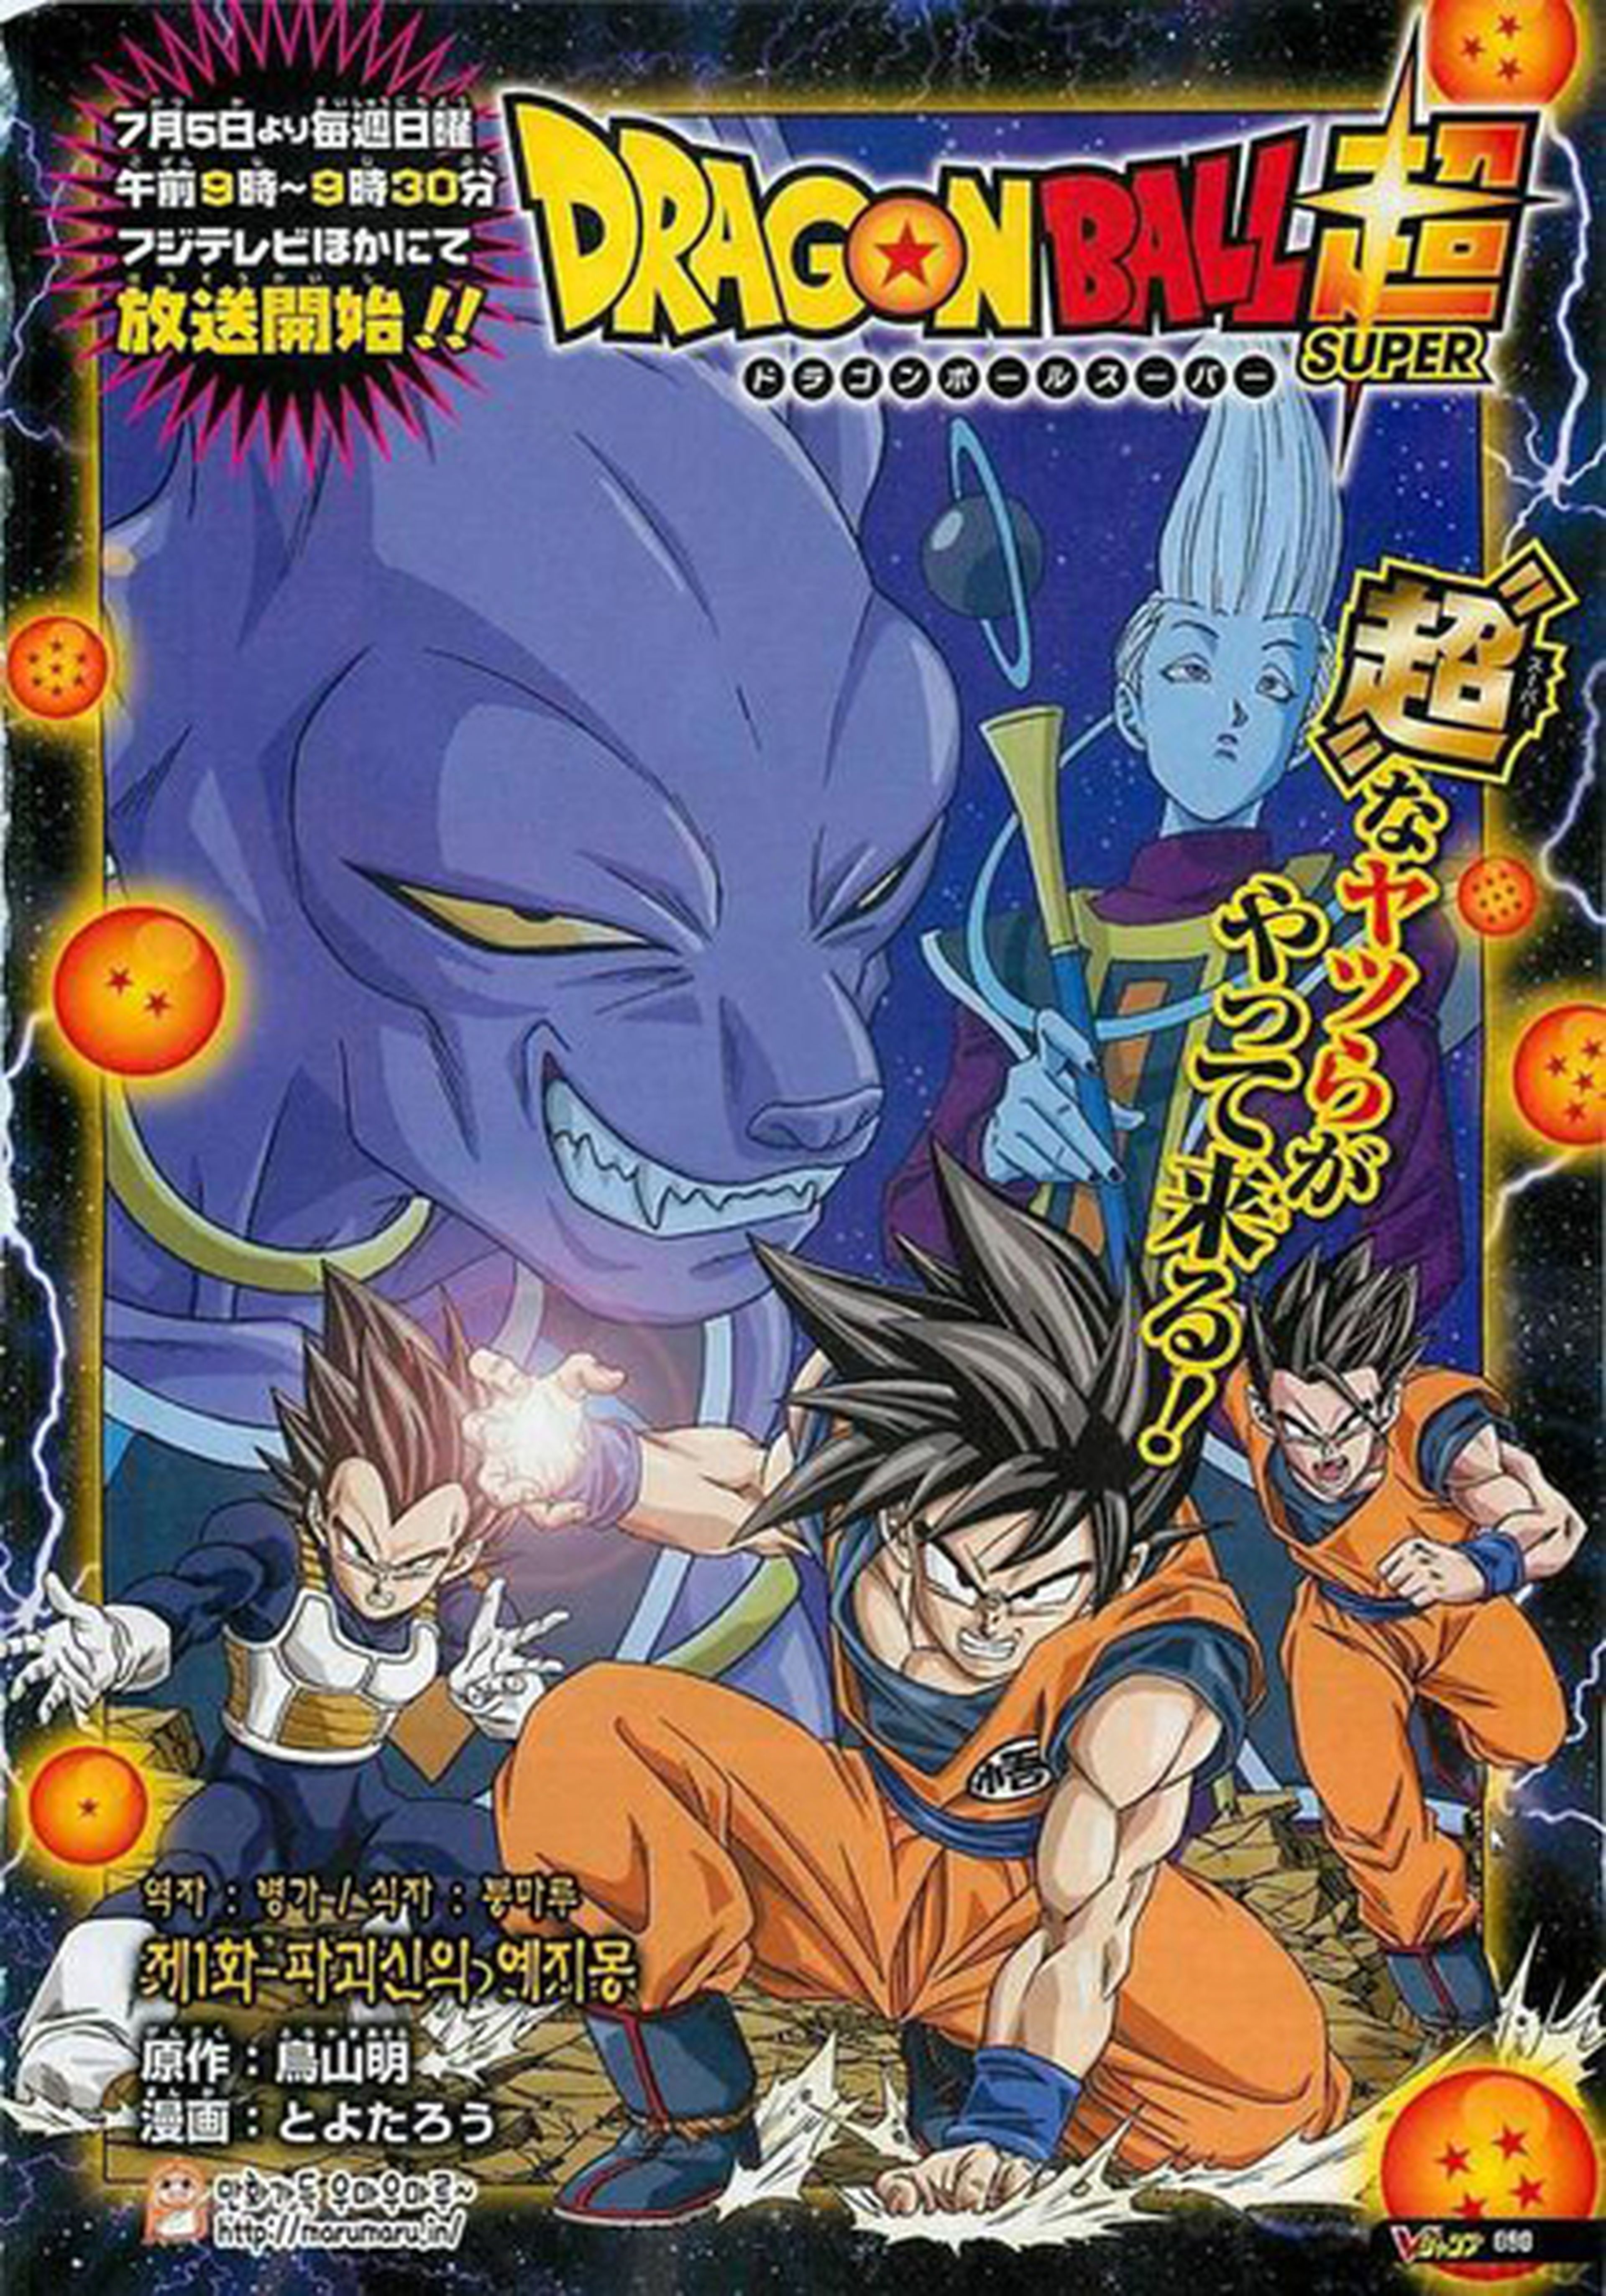 Dragon Ball Super: resumen del primer episodio del manga